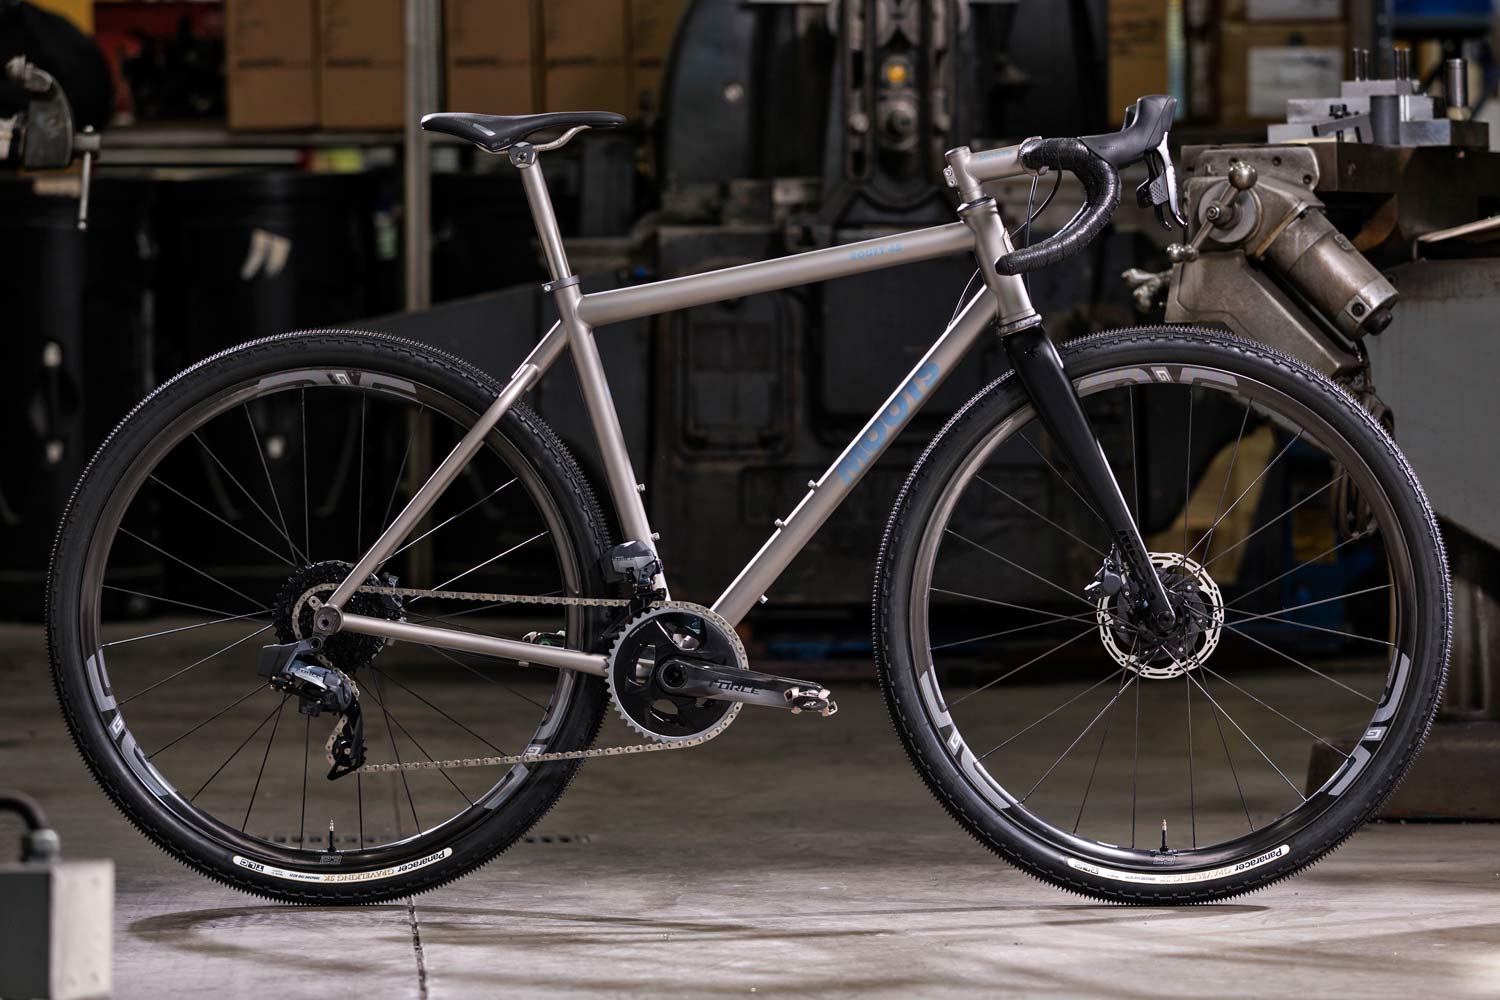 best titanium gravel bike 2020